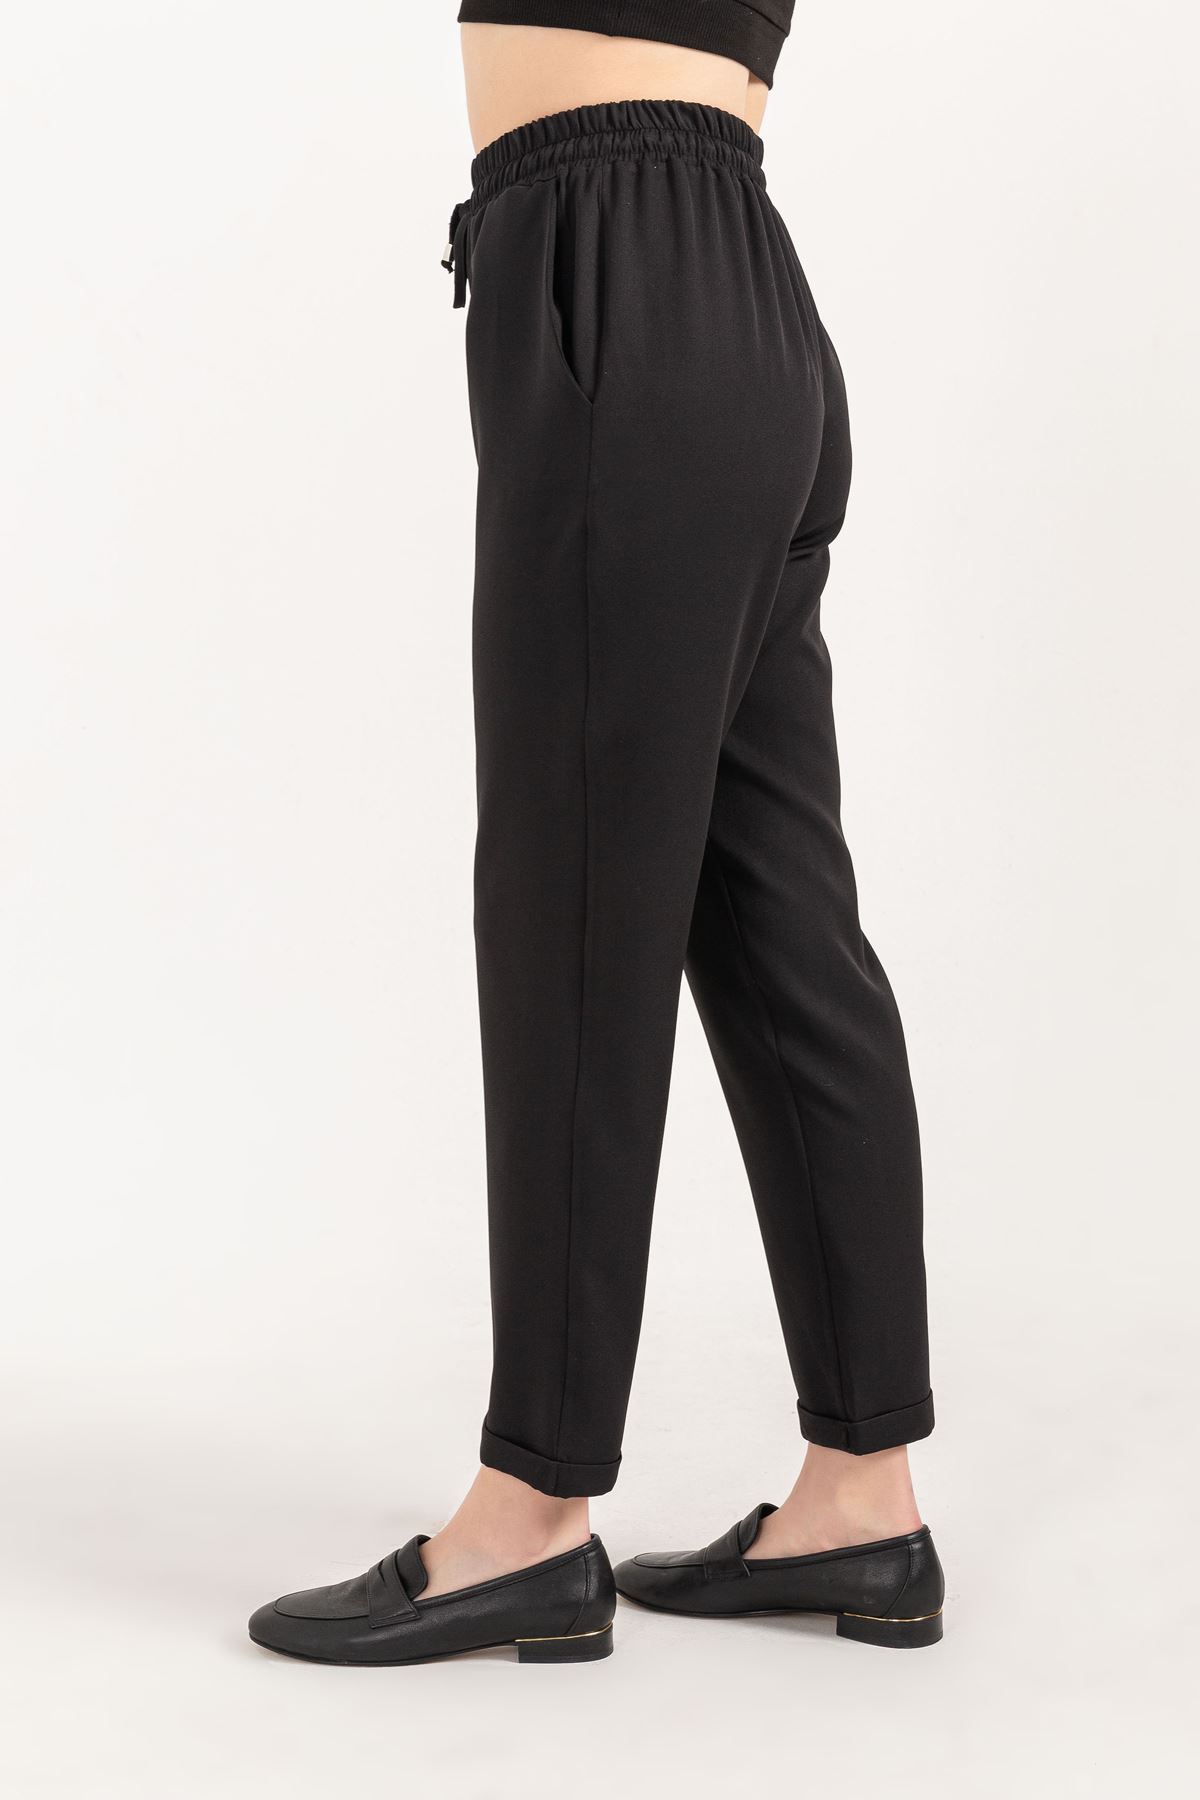 Atlas Kumaş Bel Lastik Çift Cepli Kadın Pantolon-Siyah